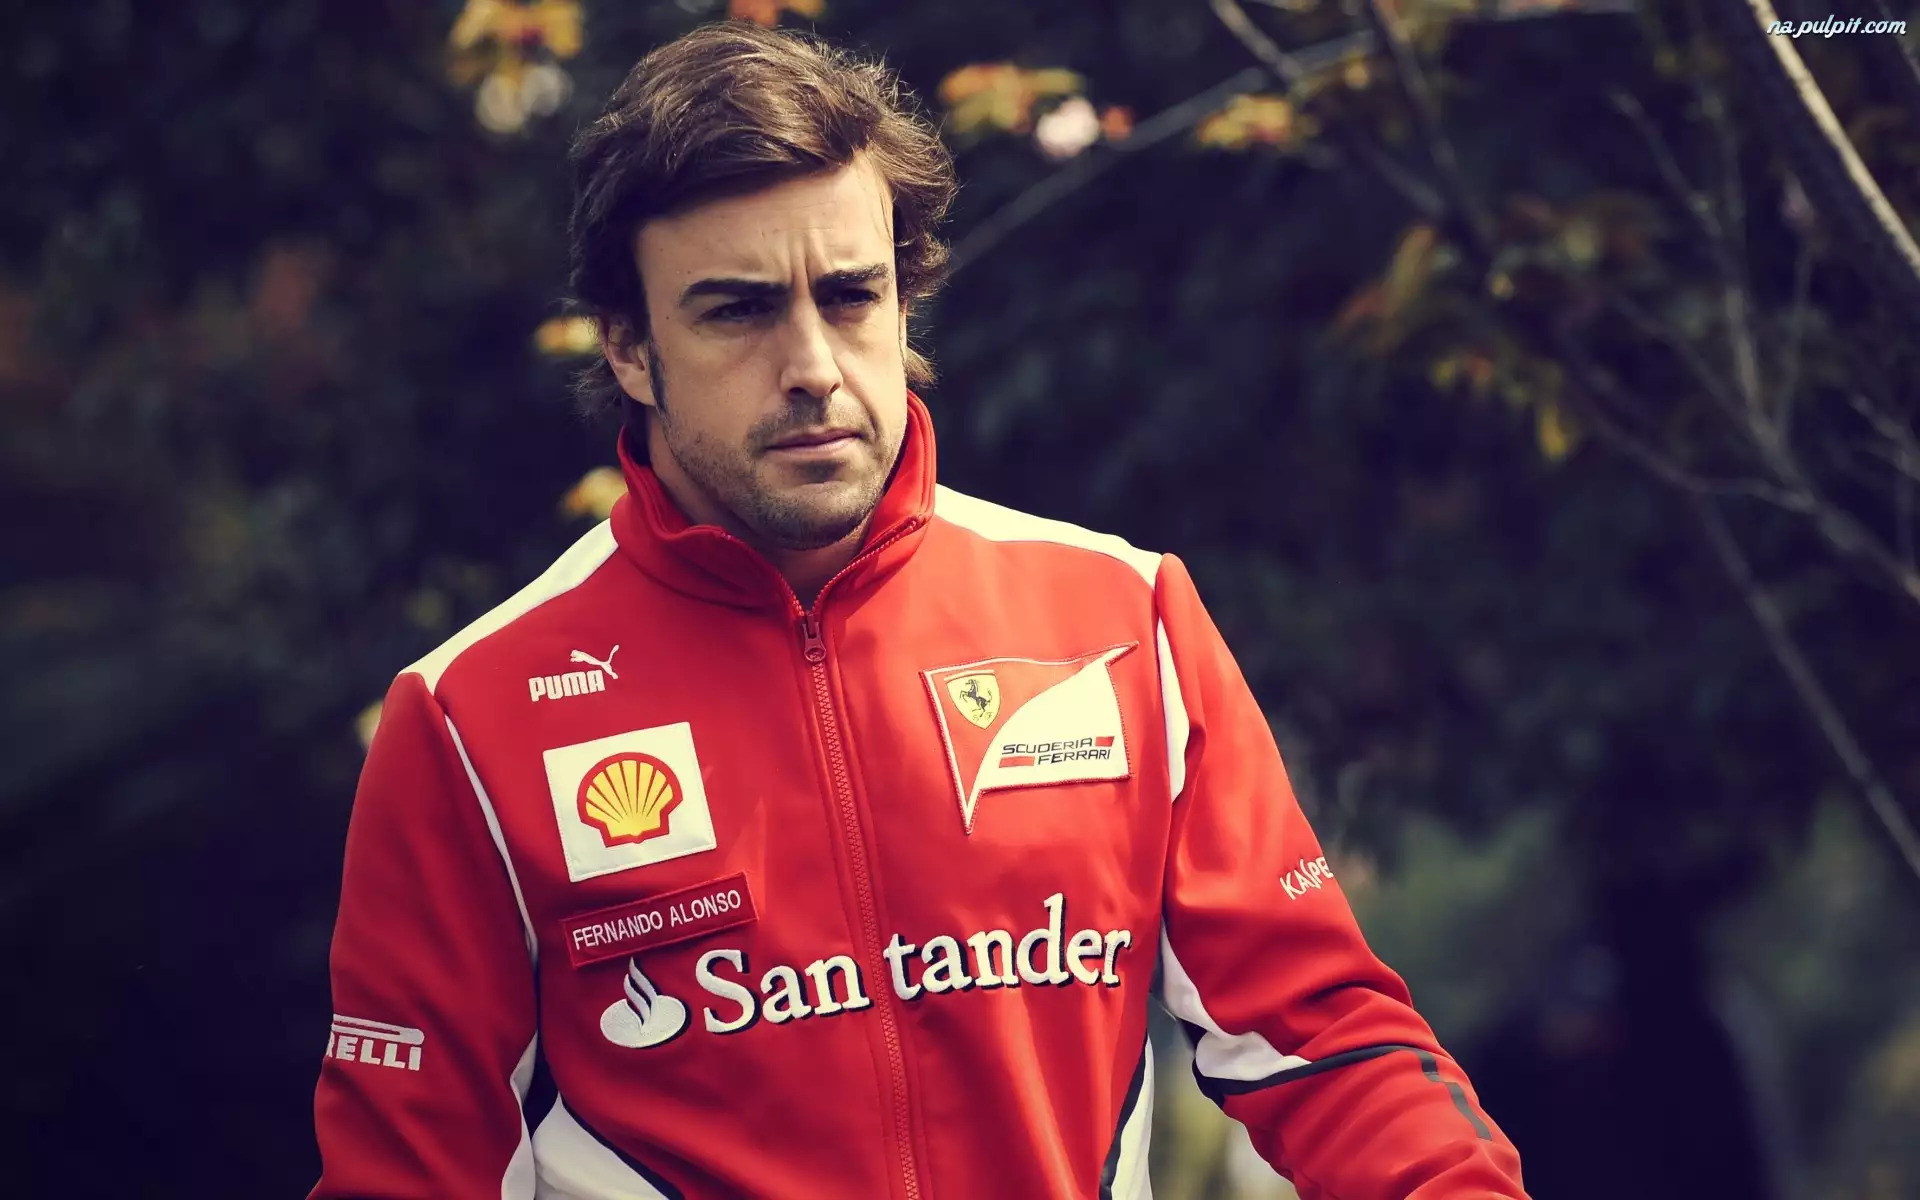 Bluza, Fernando Alonso, Sportowa